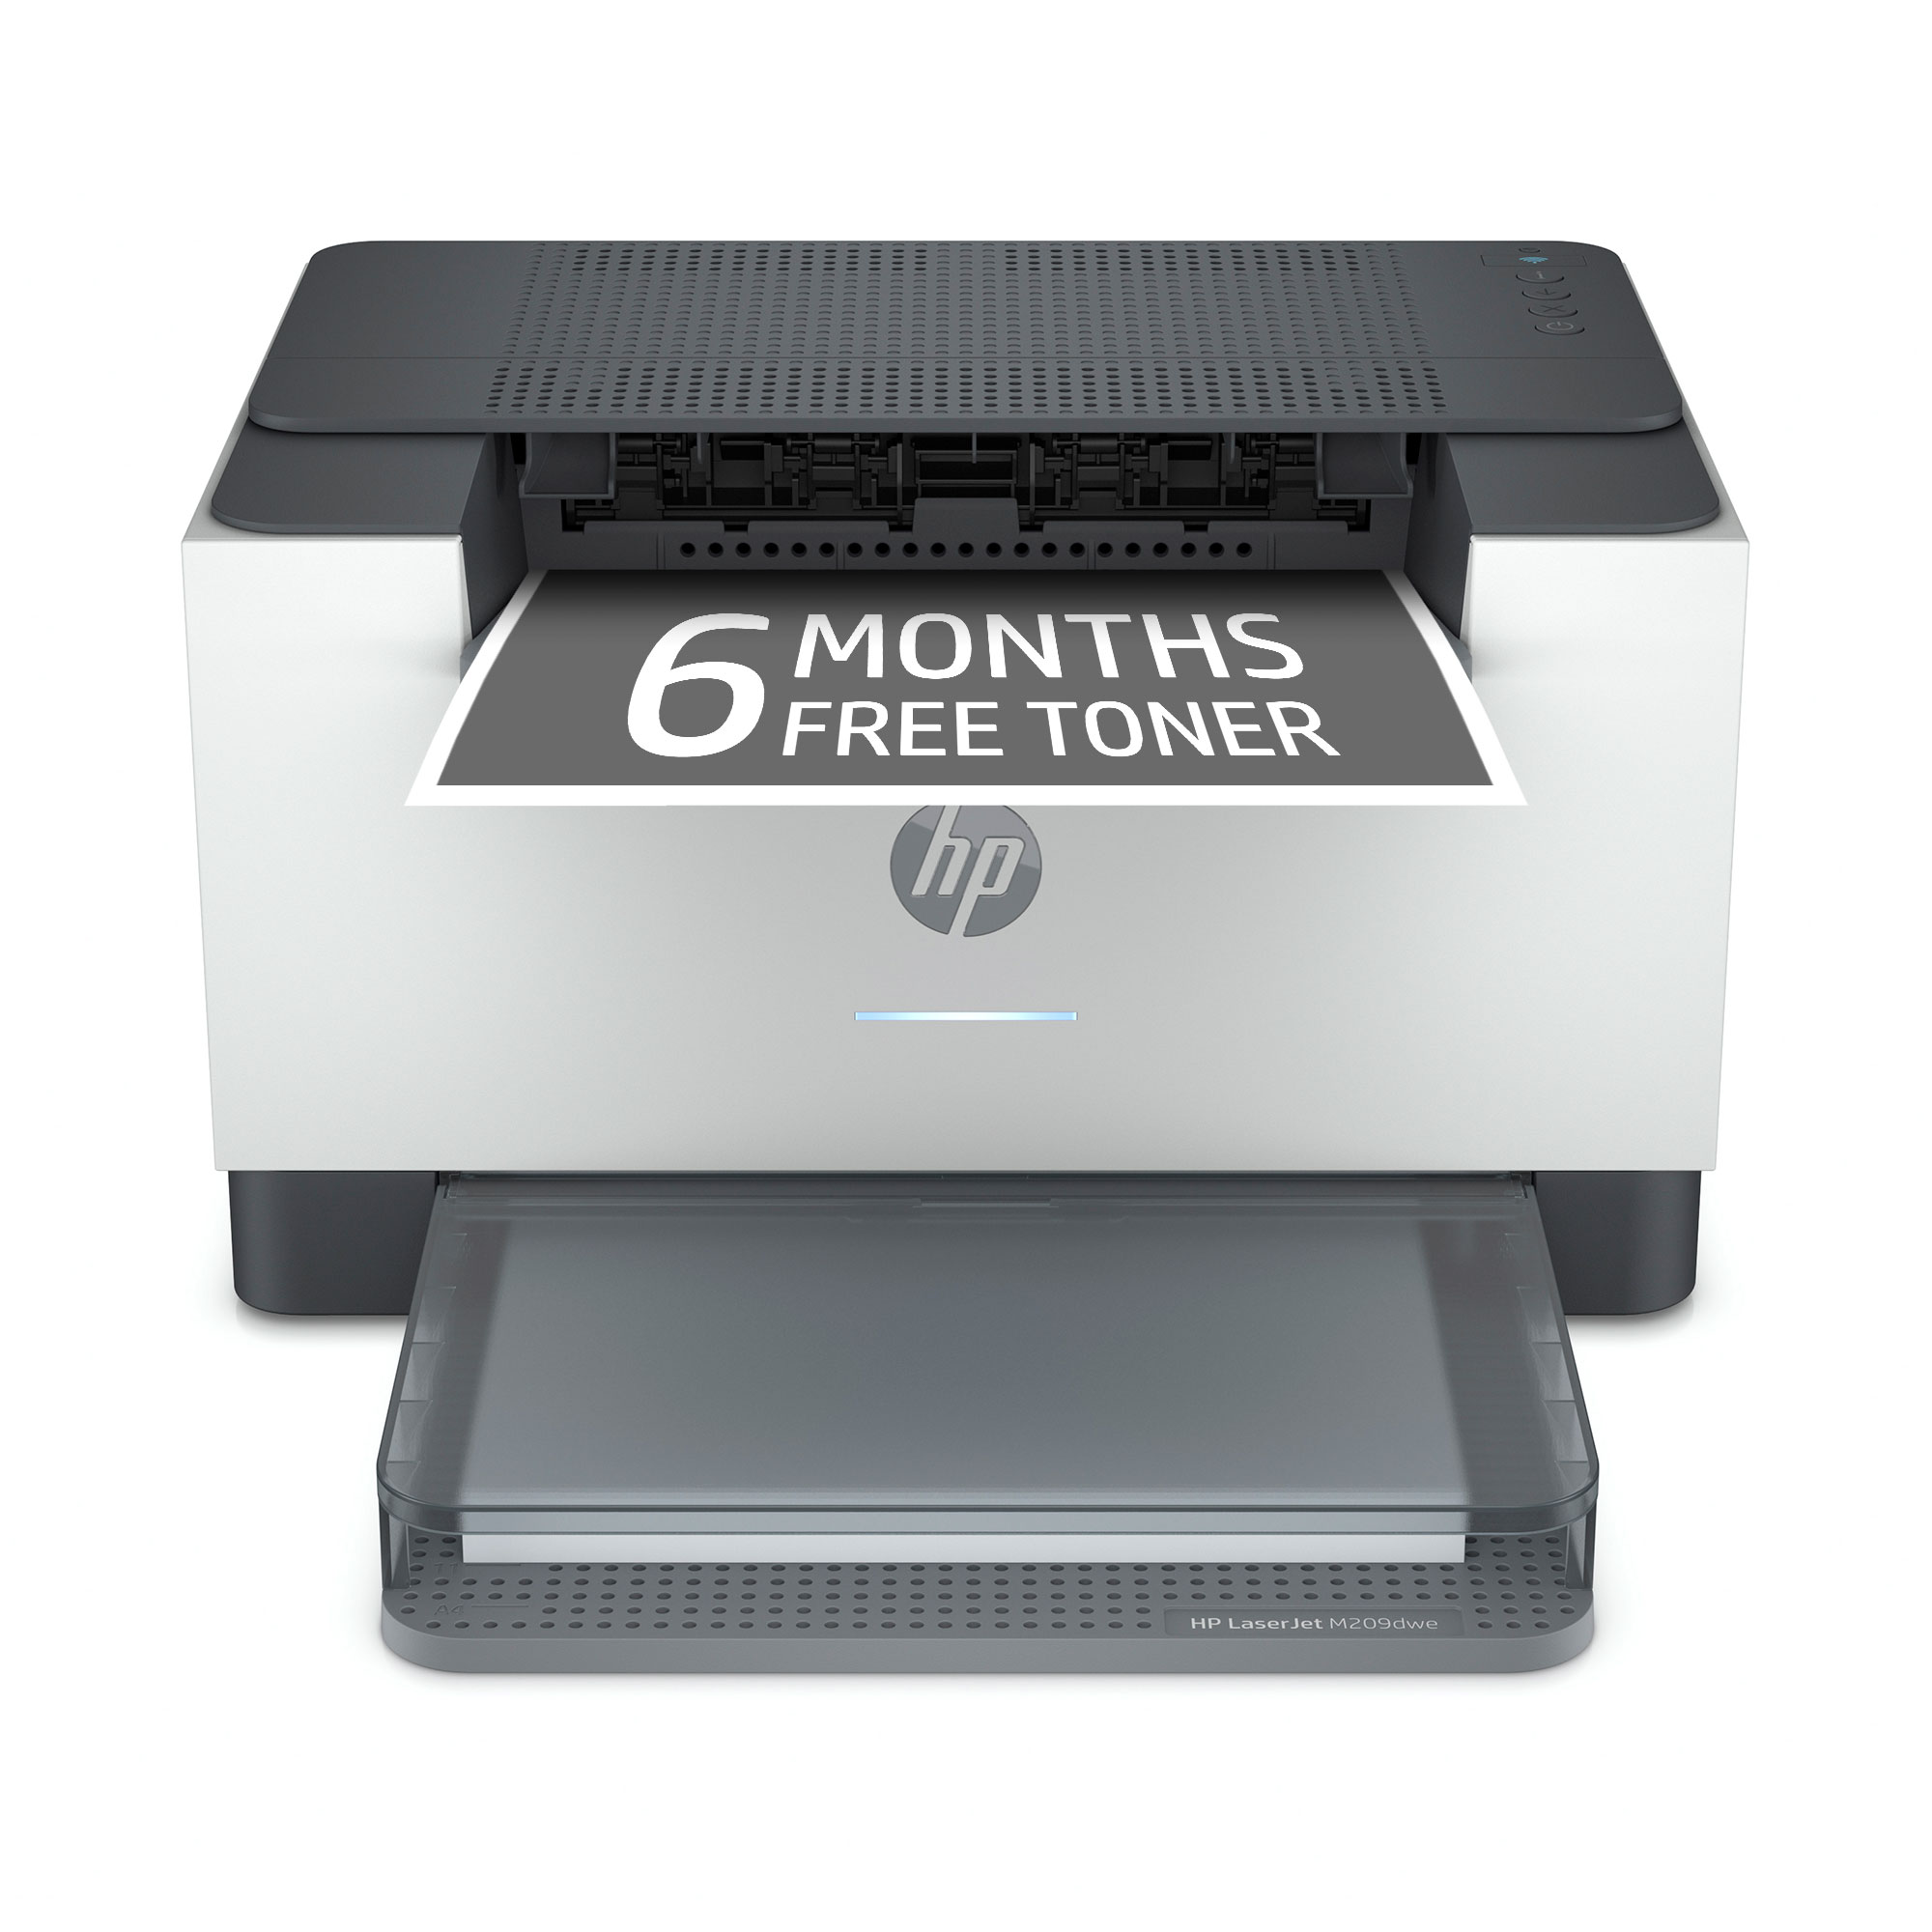 HP - LaserJet Pro M209dwe Wireless Black-and-White Laser Printer